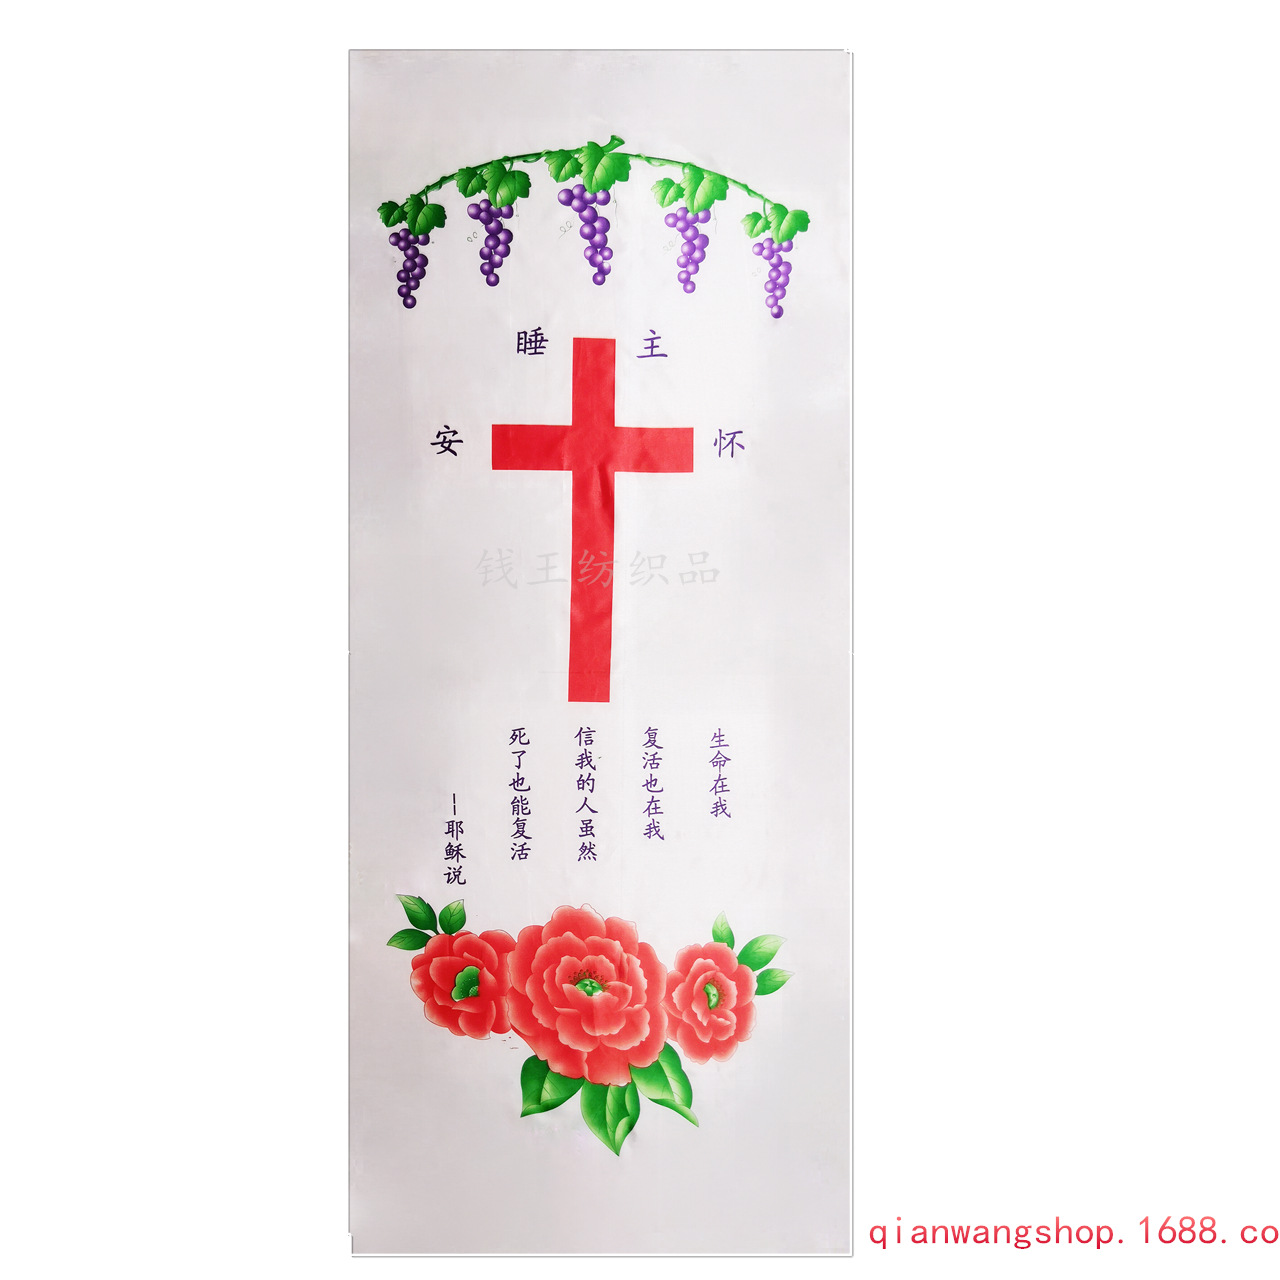 图上印有十字架和葡萄腾,以及耶稣的说教,为基督葬礼之上